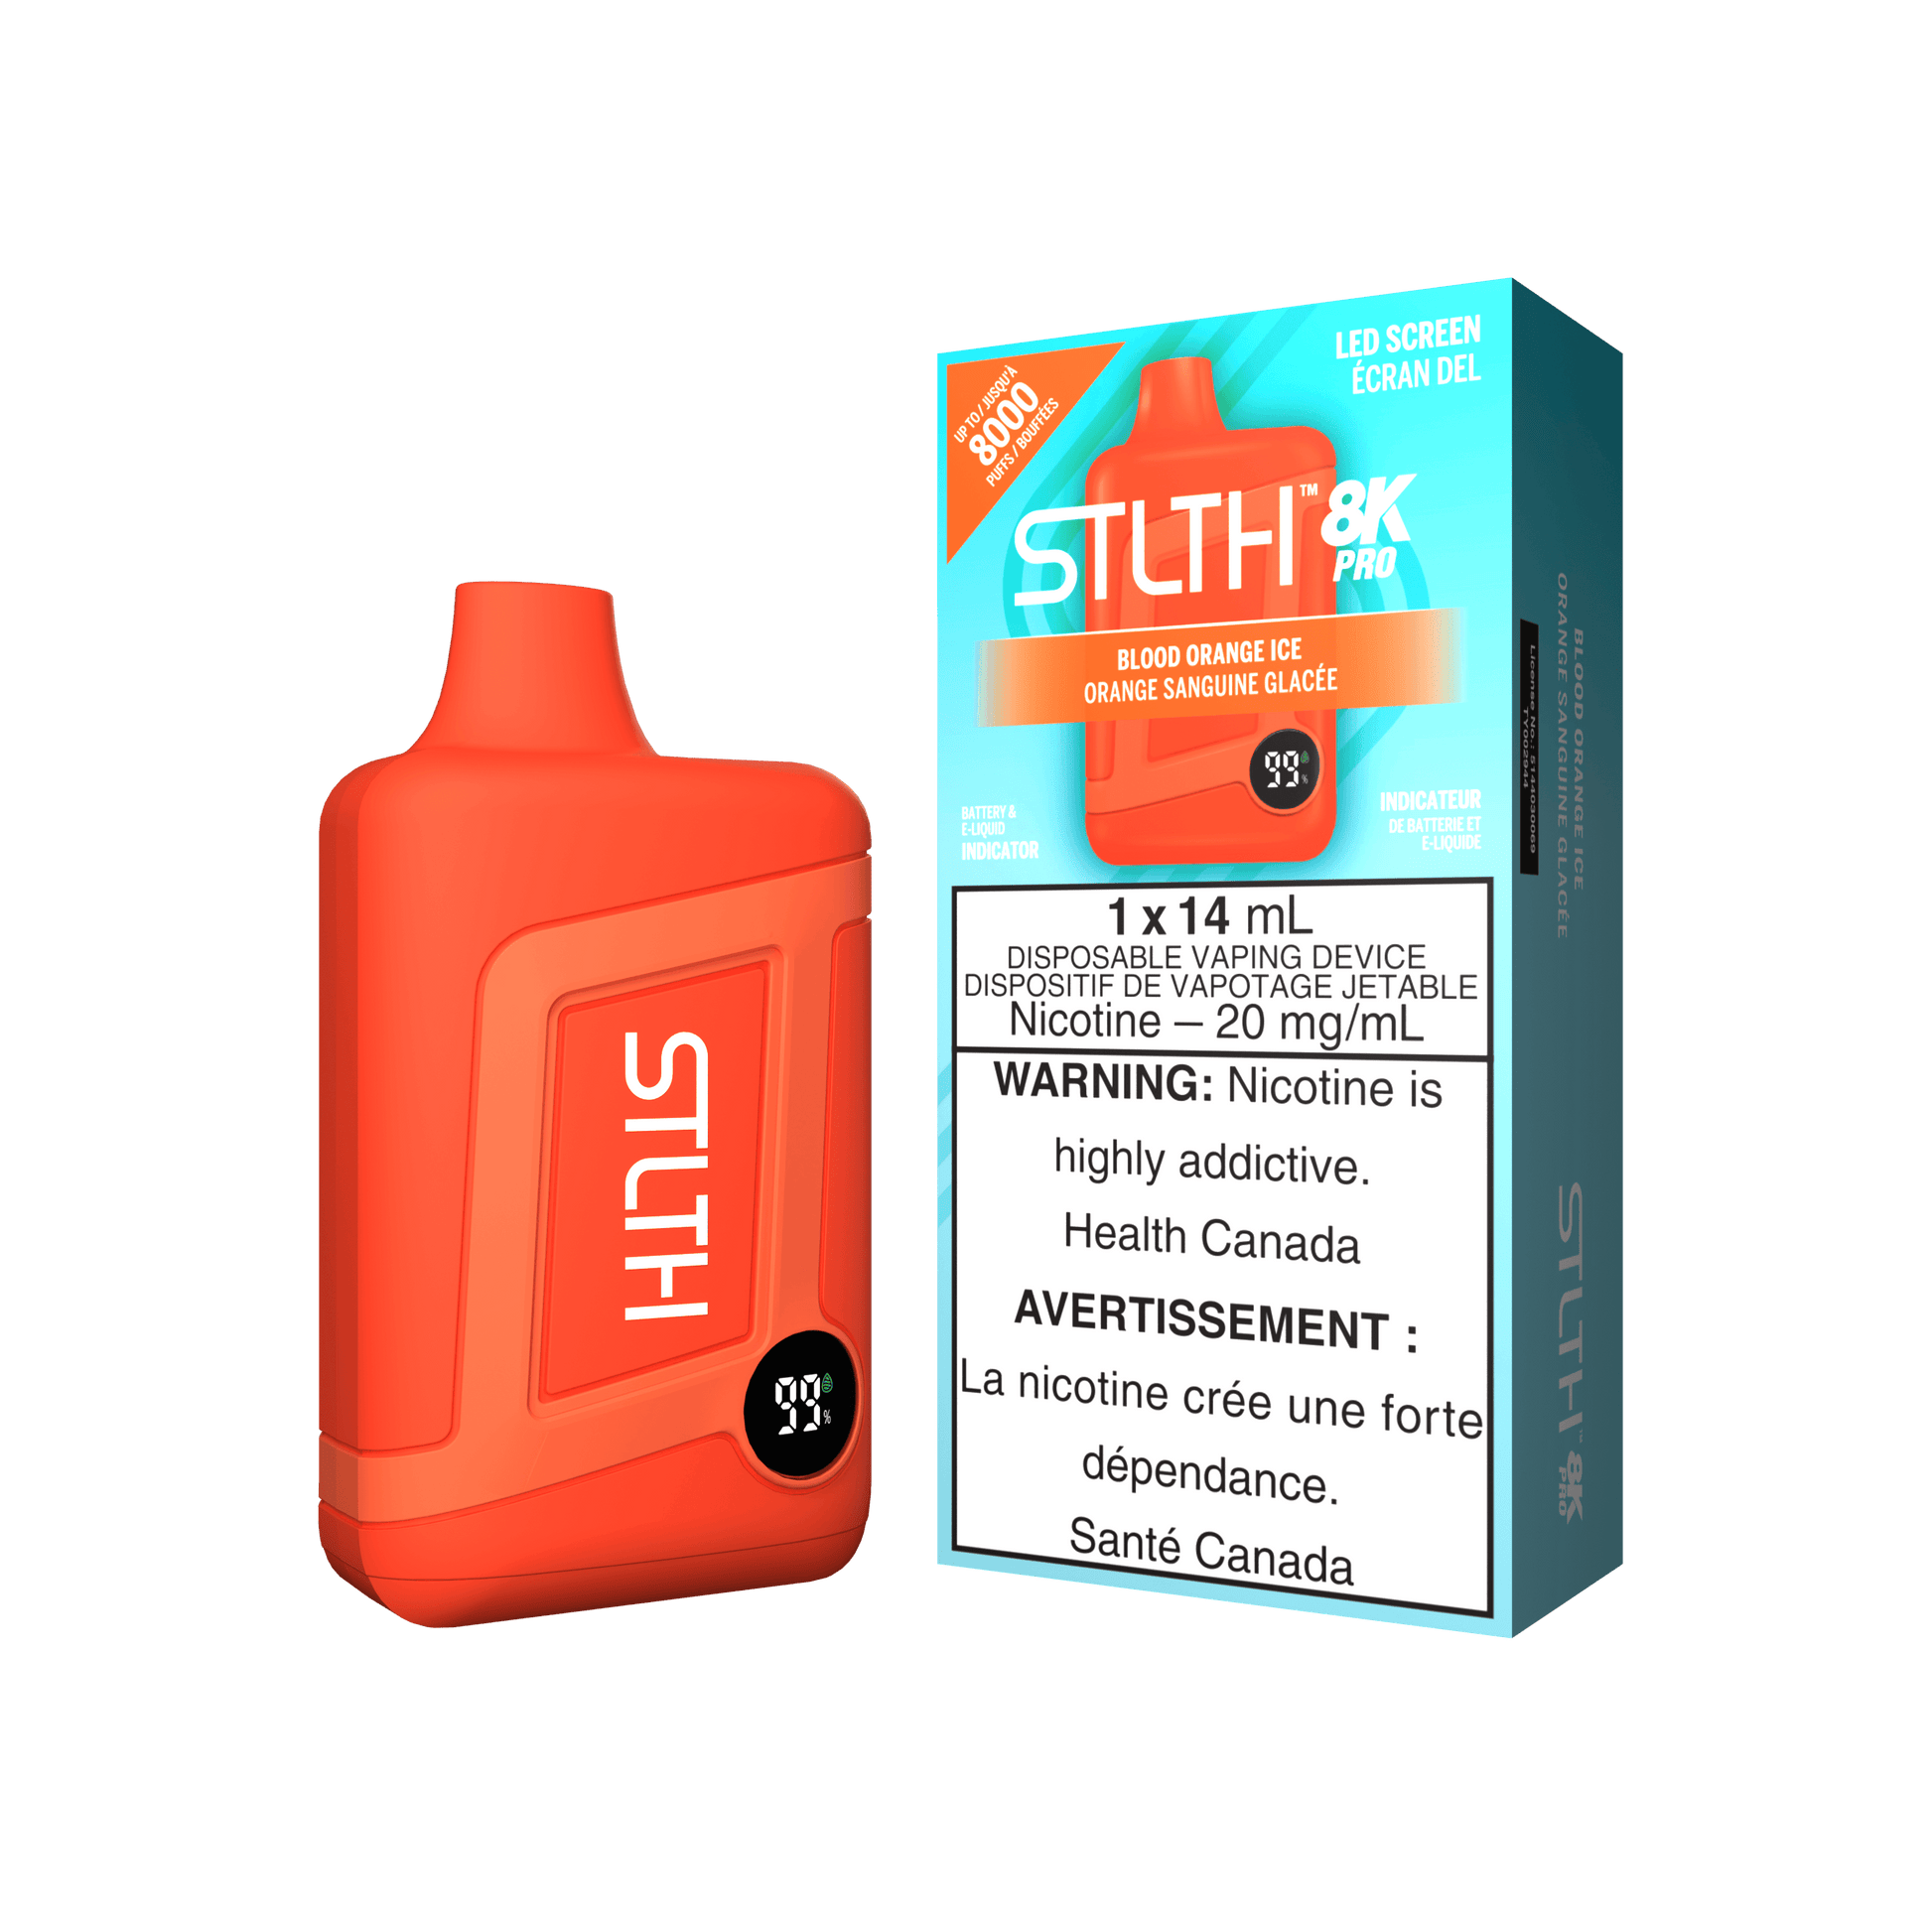 STLTH 8K Pro - Blood Orange Ice - Vapor Shoppe